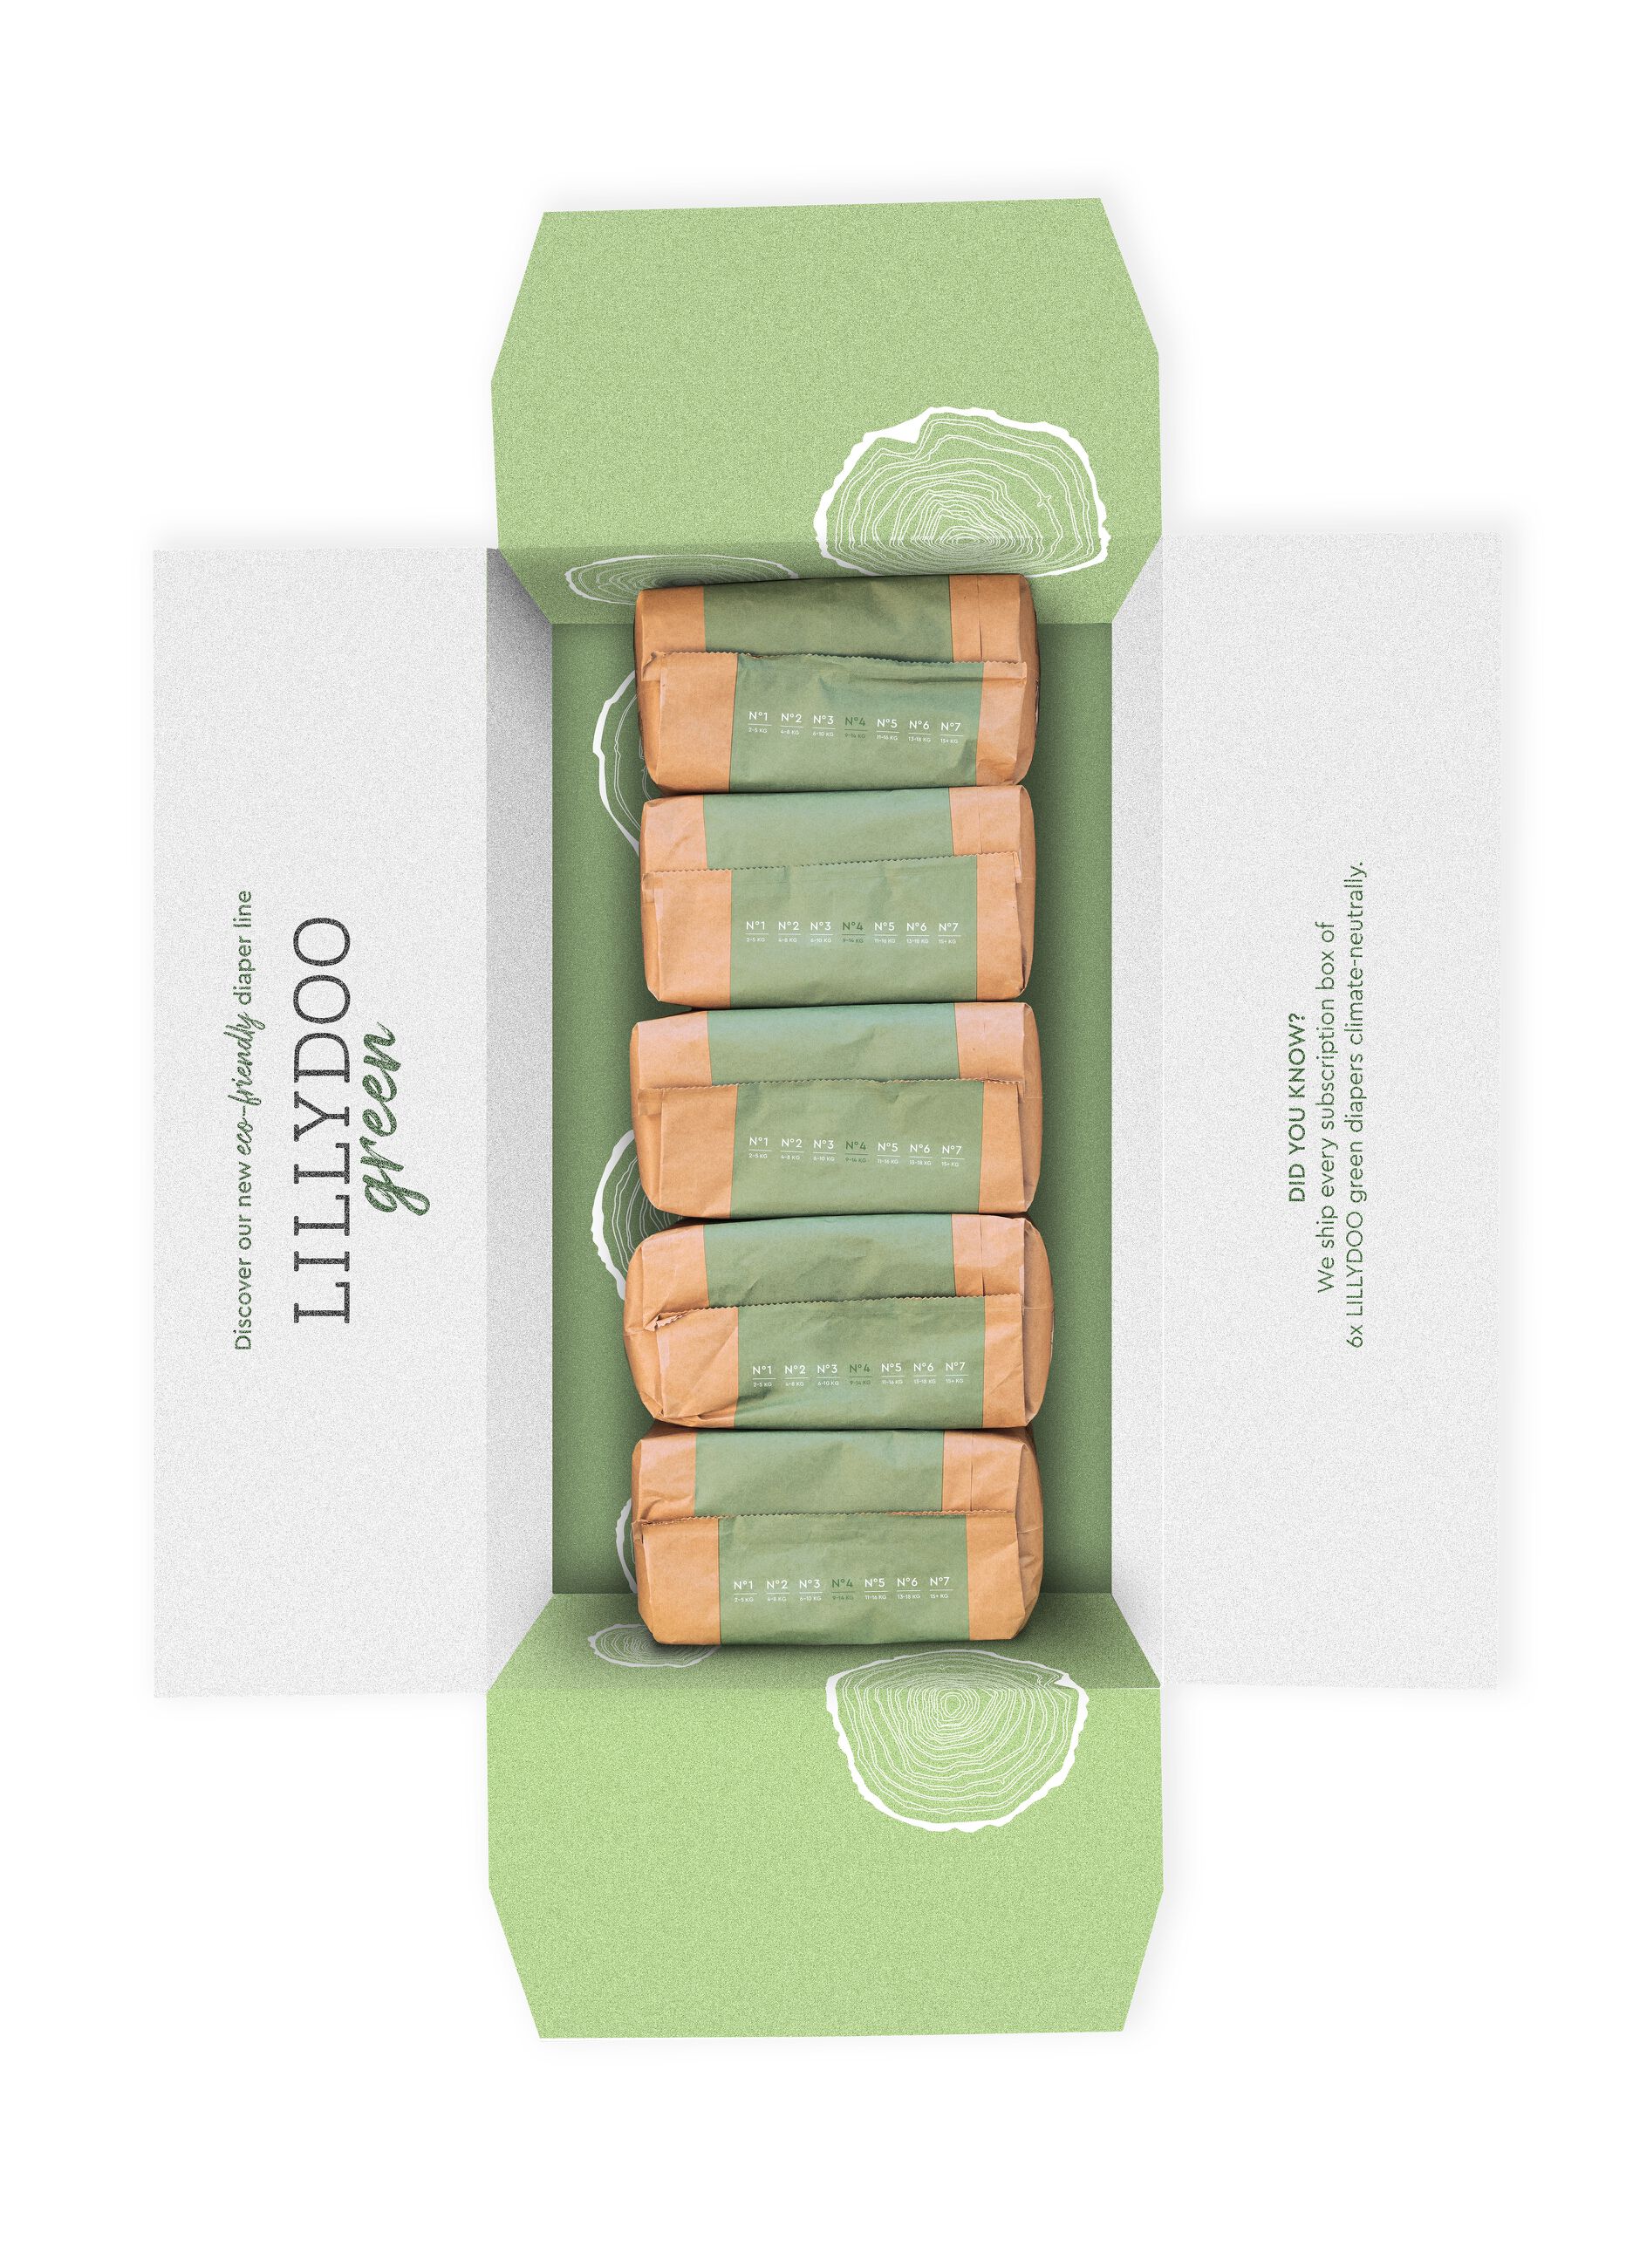 Pannolini multipack da 5 confezioni ecosostenibili N°4 (9-14Kg) Lillydoo